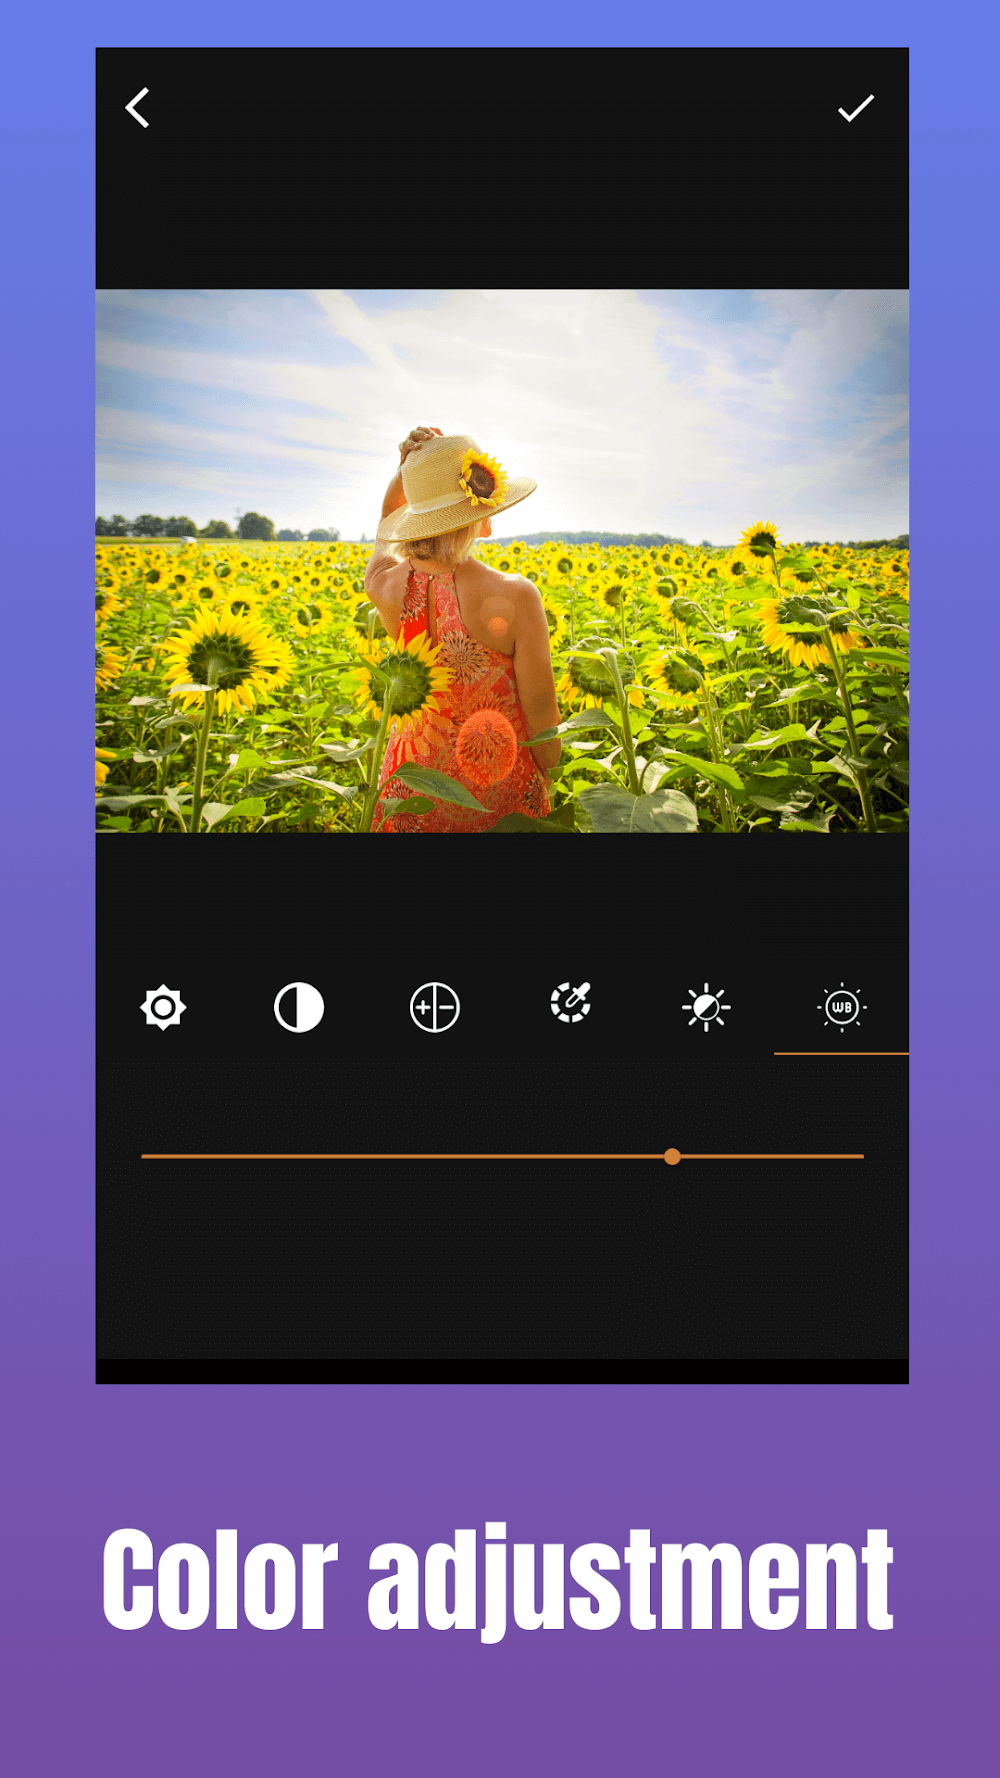 GIF Maker - GIFShop v1.8.6 MOD APK (Premium Unlocked) Download